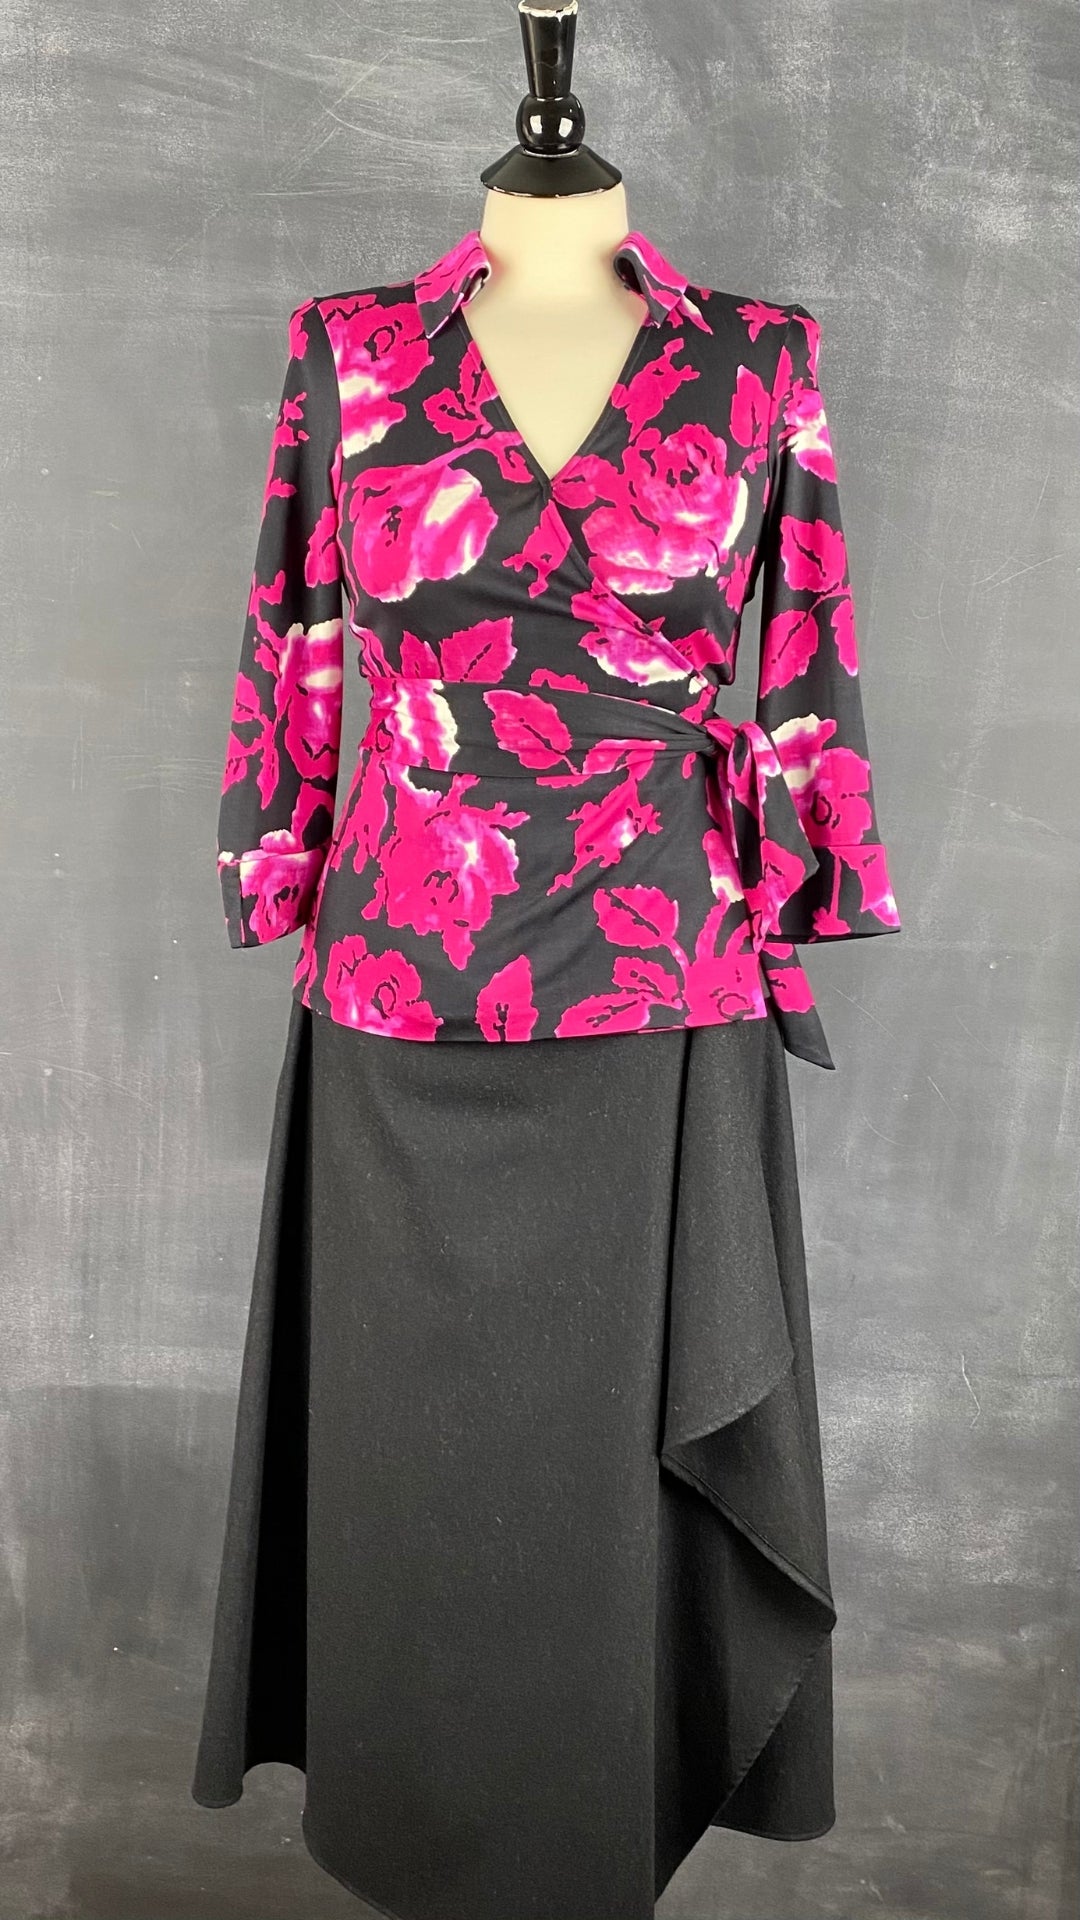 Jupe longue noire chiné en lainage Massimo Dutti, taille small. Vue de l'agencement avec le haut floral en soie.